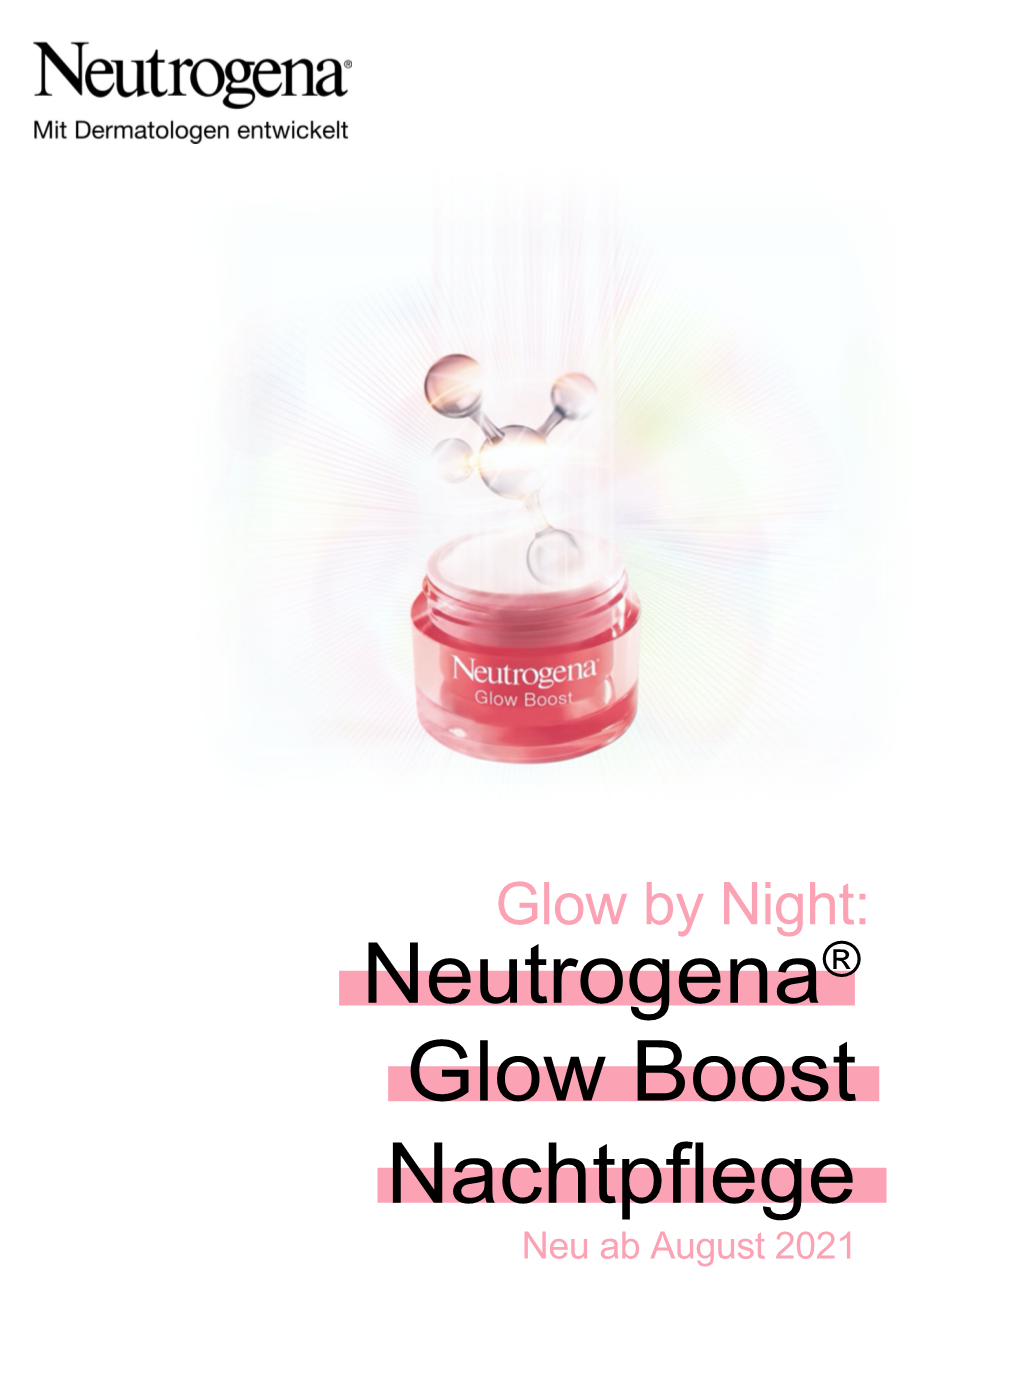 Neutrogena® Glow Boost Nachtpflege Neu Ab August 2021